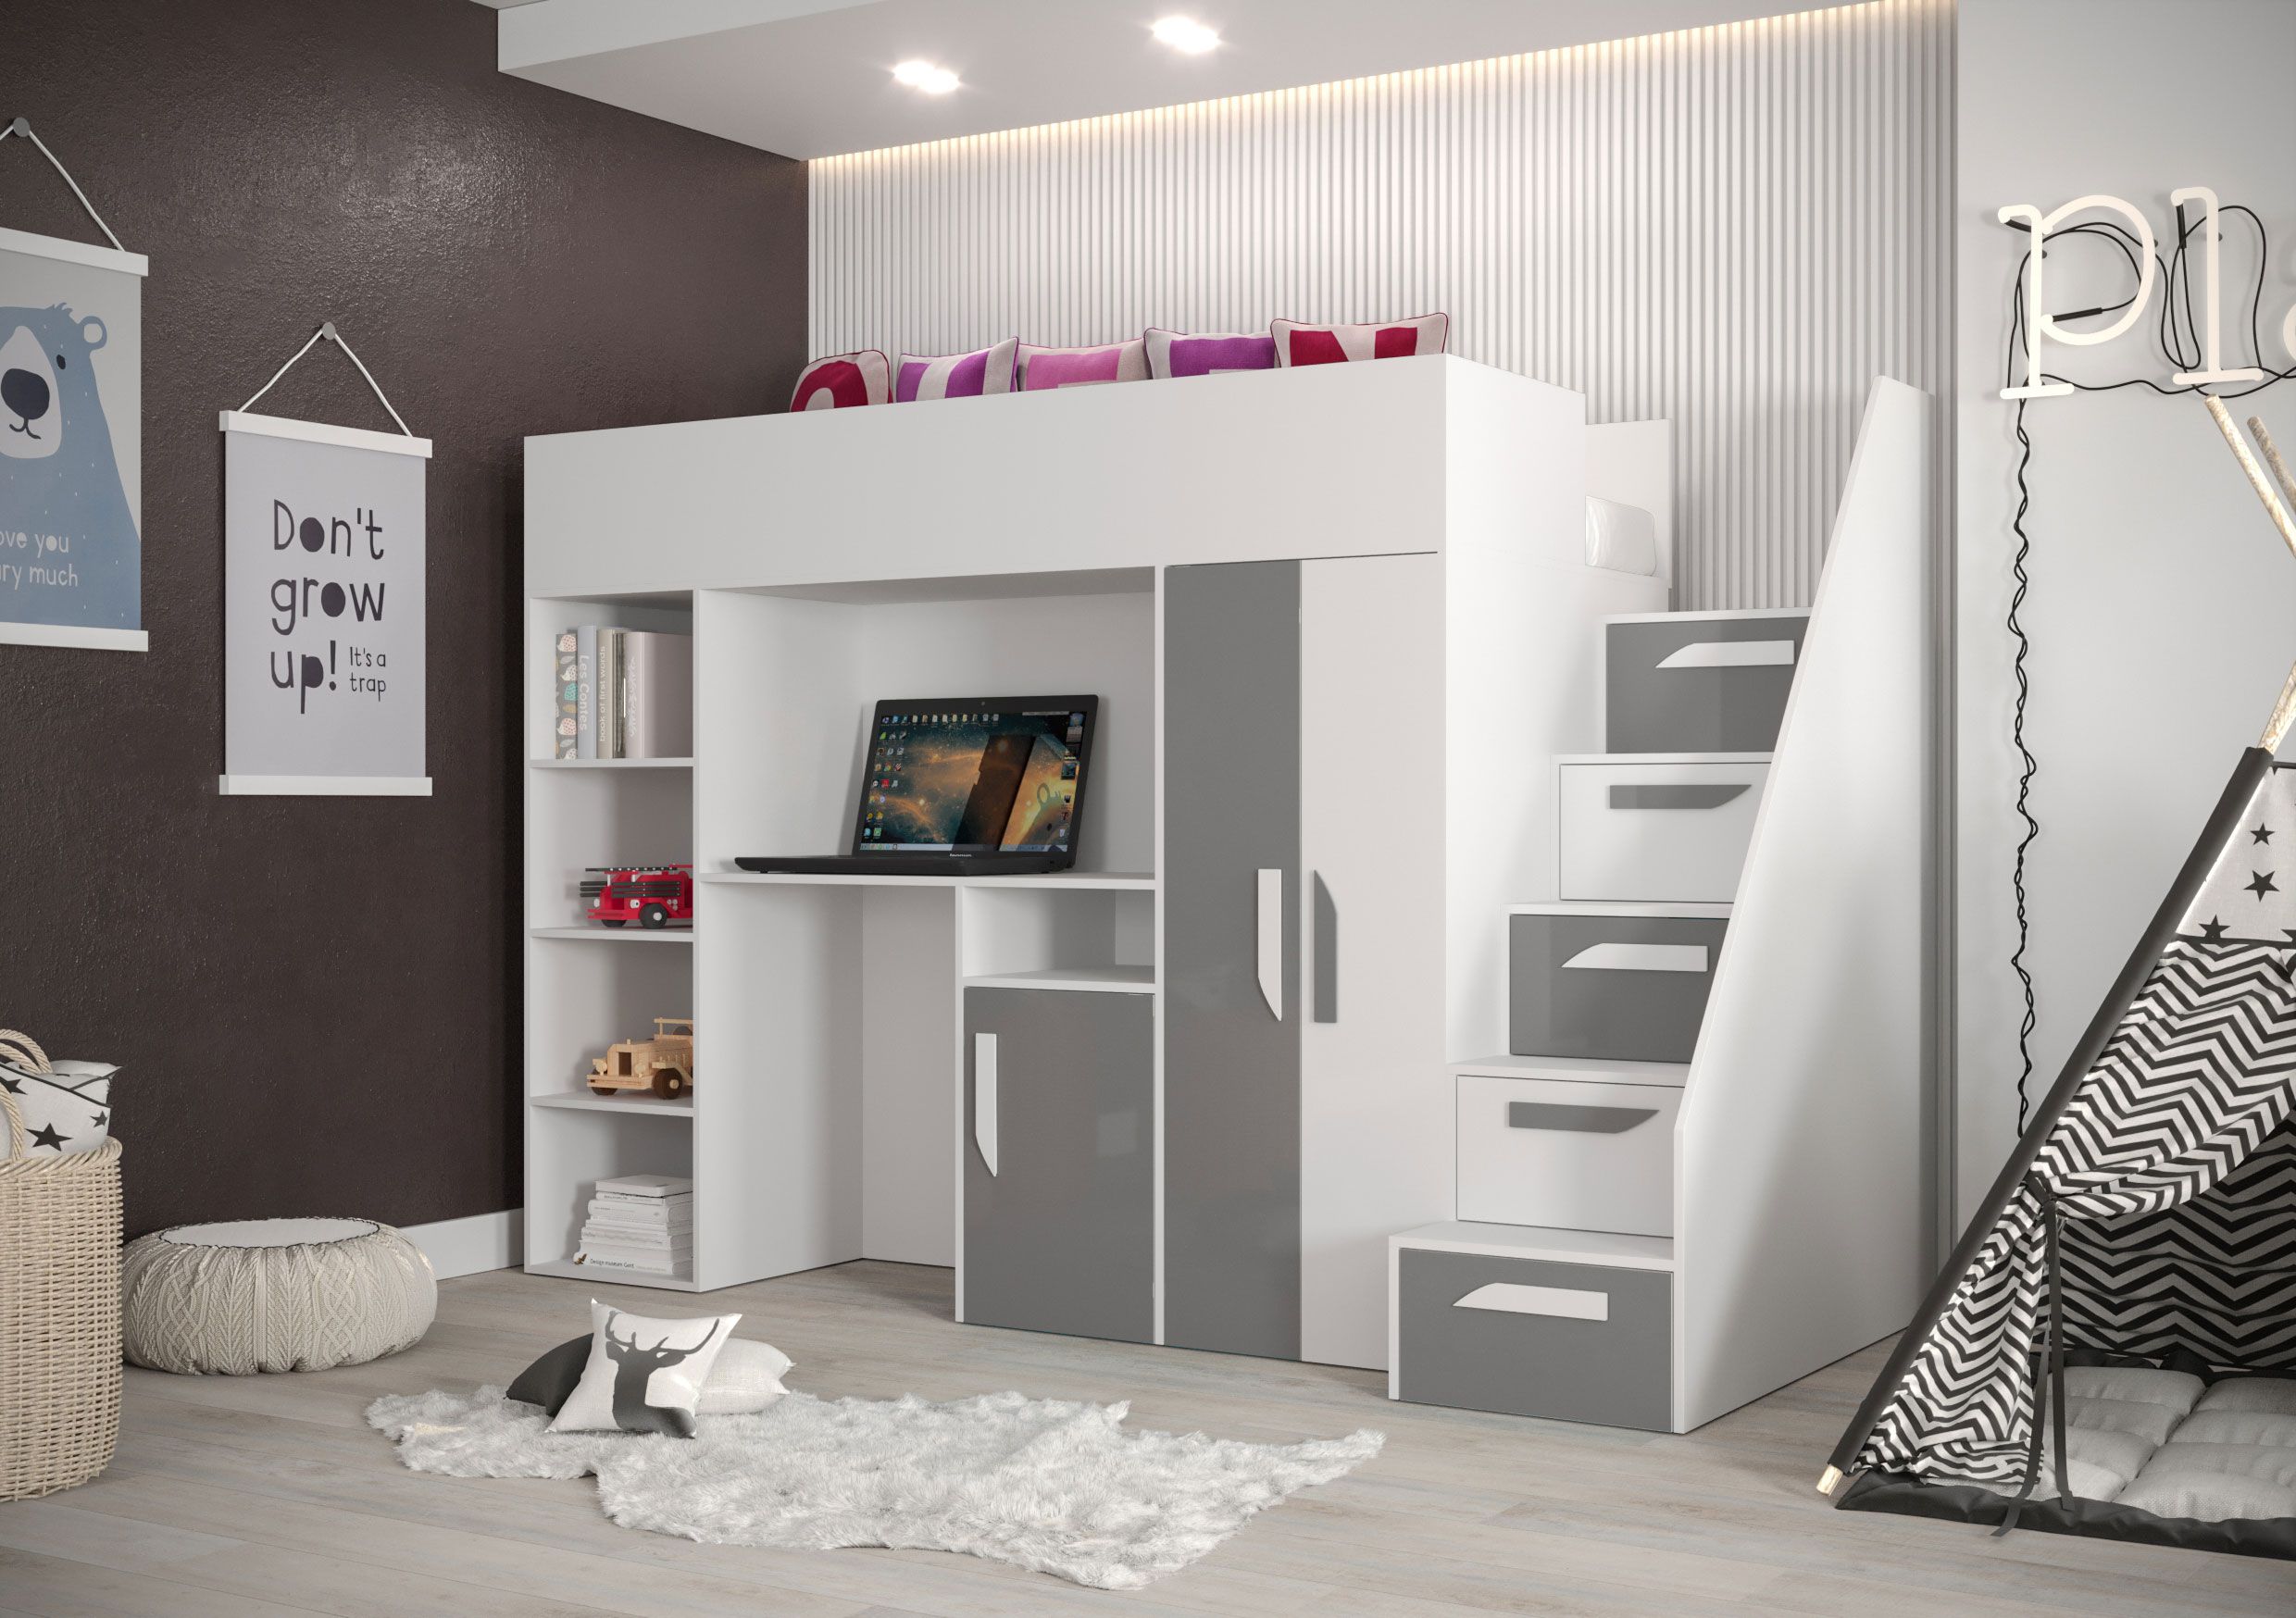 Lit fonctionnel / lit d'enfant / lit mezzanine avec espace de rangement et bureau Jura 19, couleur : blanc / gris - dimensions : 165 x 247 x 120 cm (h x l x p)